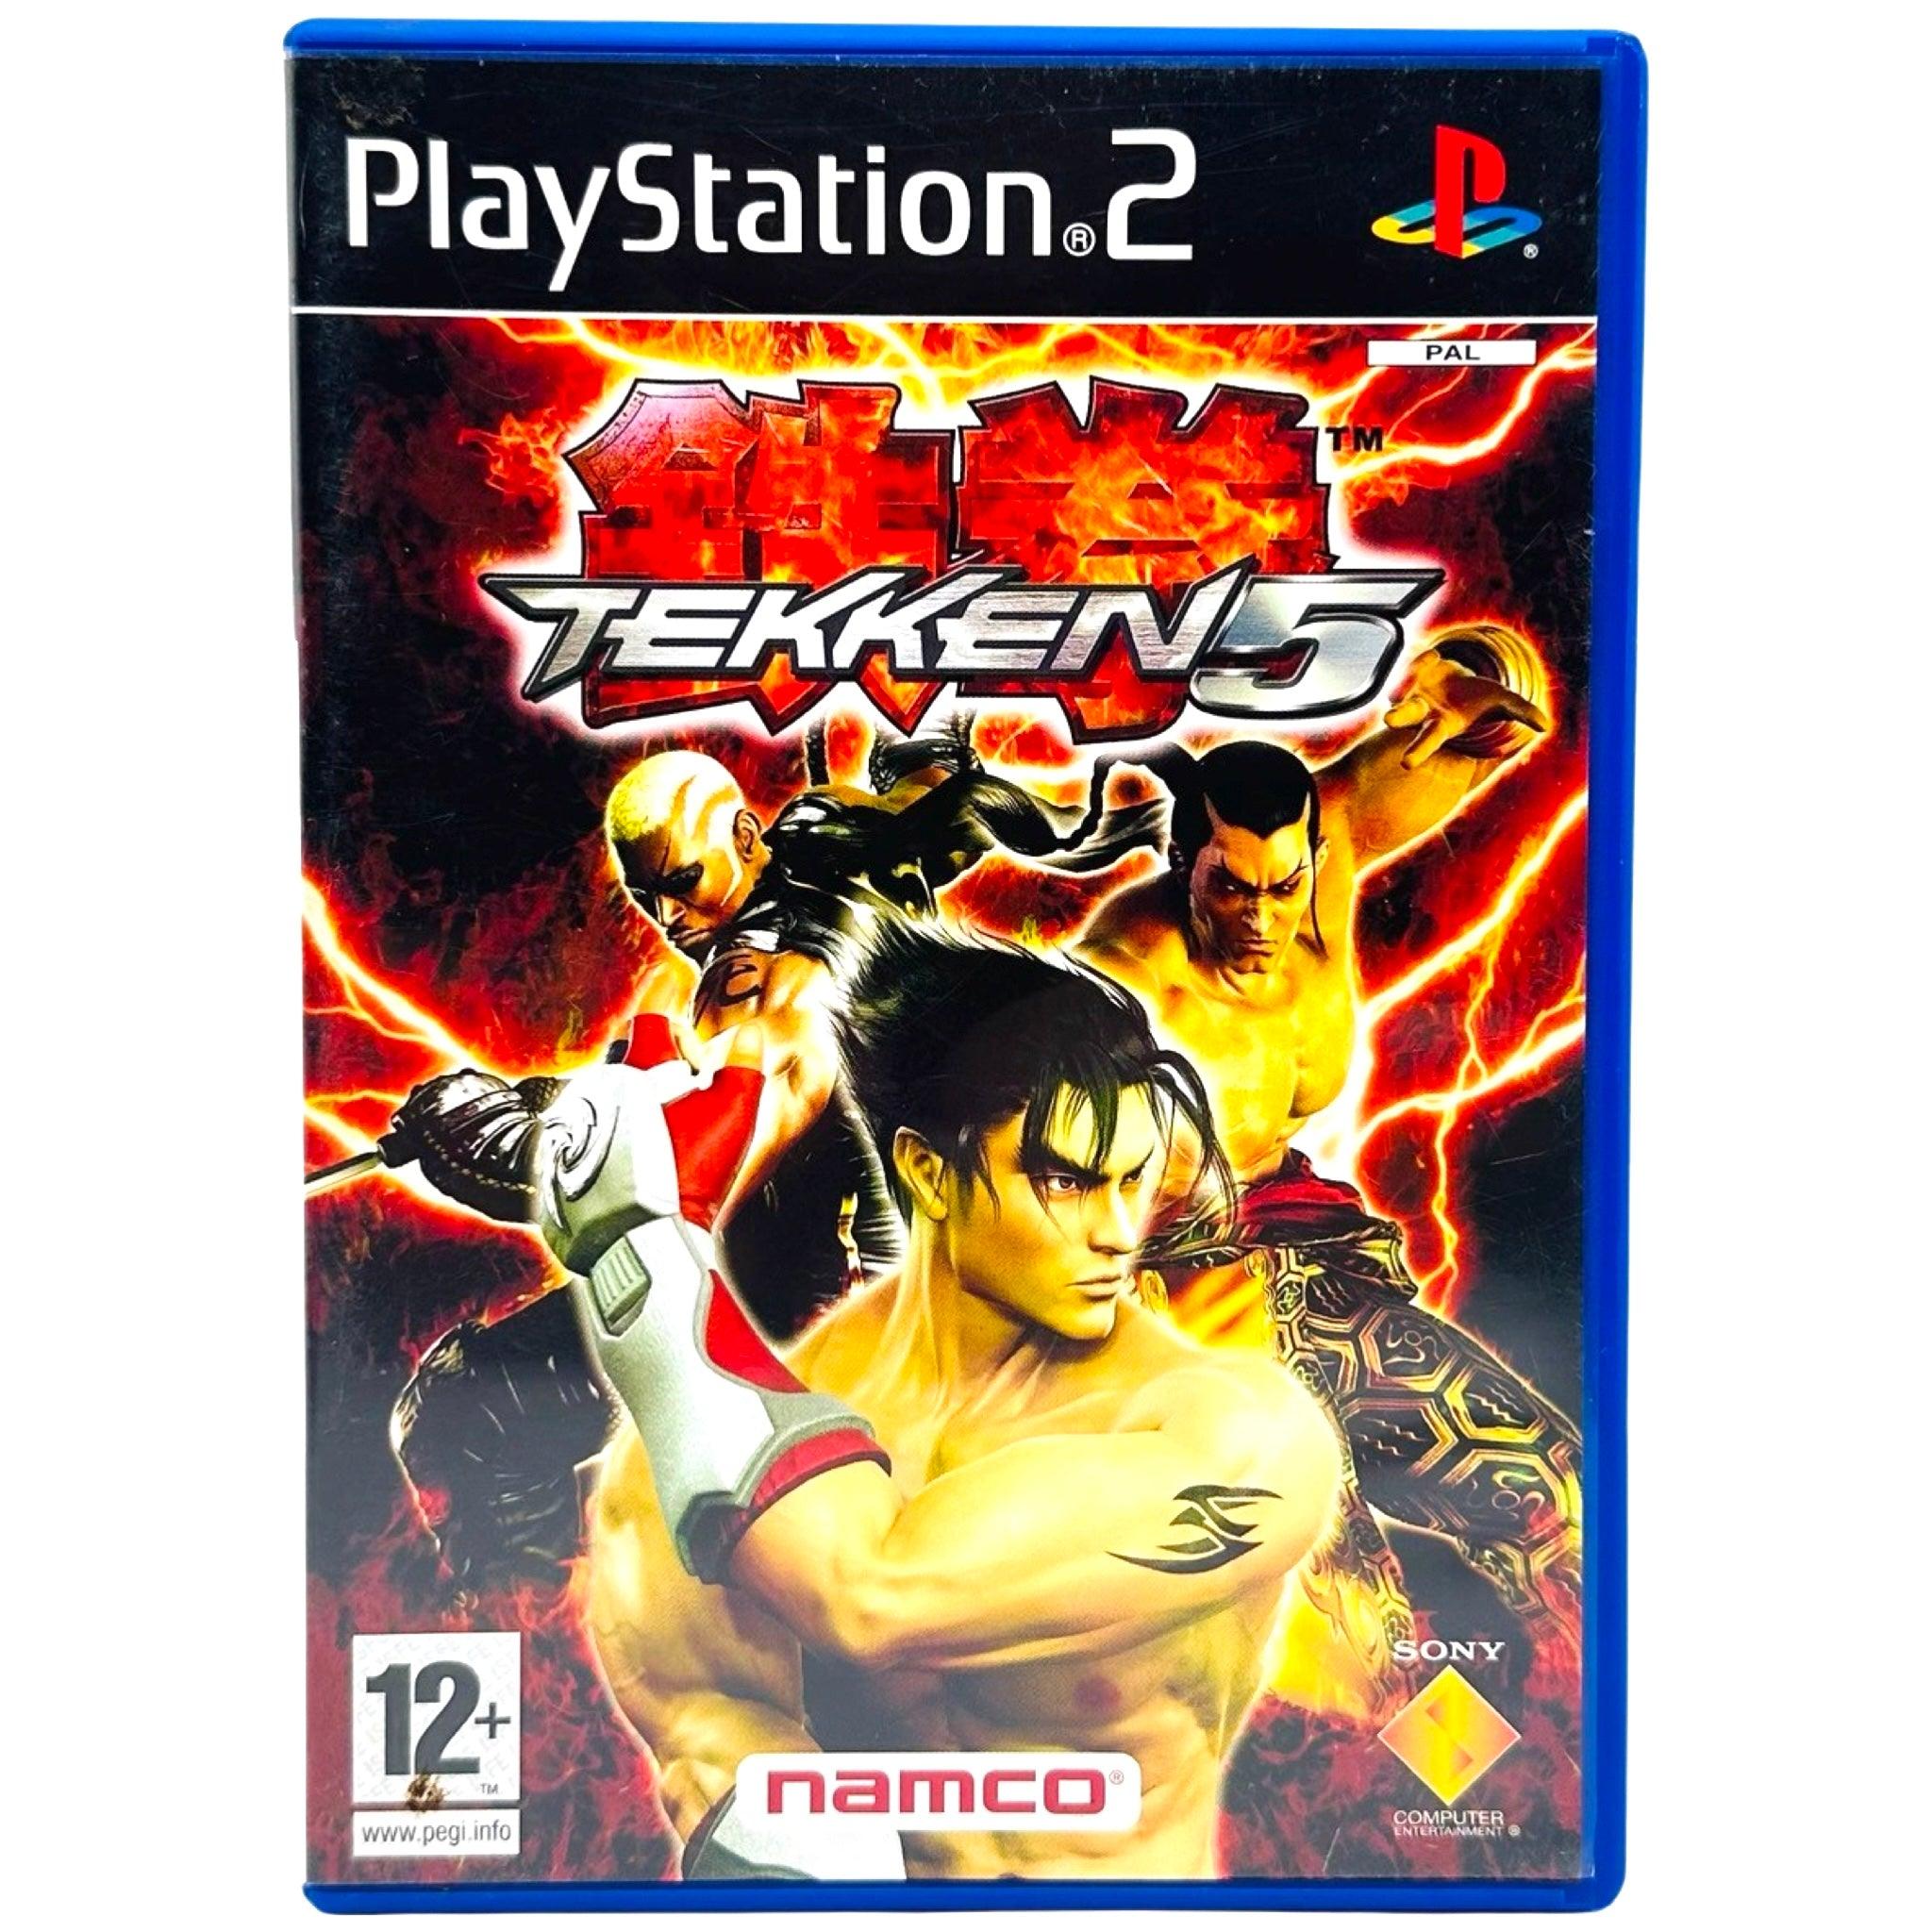 PS2: Tekken 5